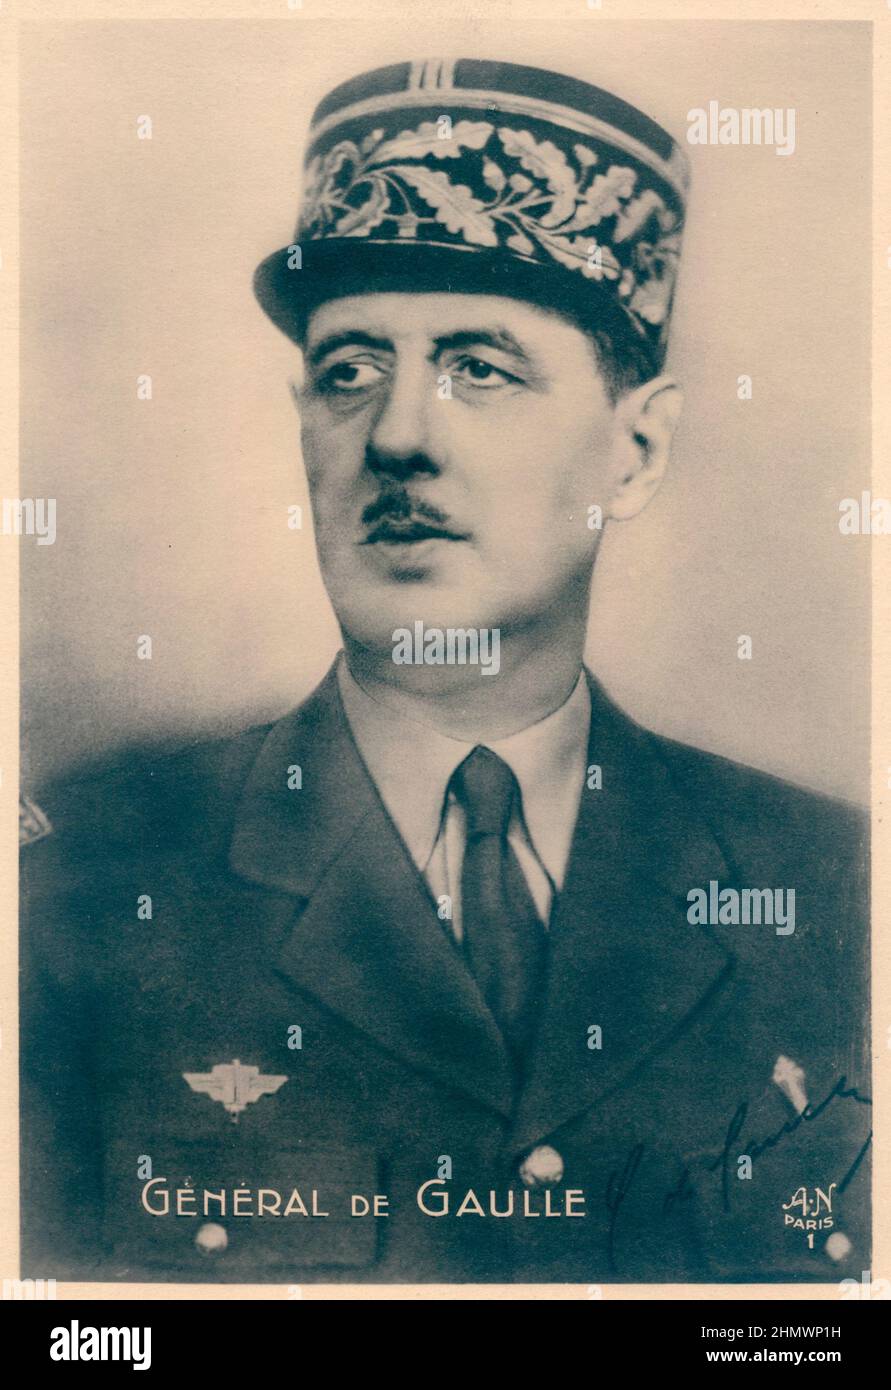 GENERAL de GAULLE Charles André Joseph Marie de Gaulle war ein französischer Armeeoffizier und Staatsmann, der im Zweiten Weltkrieg das Freie Frankreich gegen Nazi-Deutschland führte und von 1944 bis 1946 den Vorsitz der Provisorischen Regierung der Französischen Republik führte, um die Demokratie in Frankreich wiederherzustellen. Stockfoto